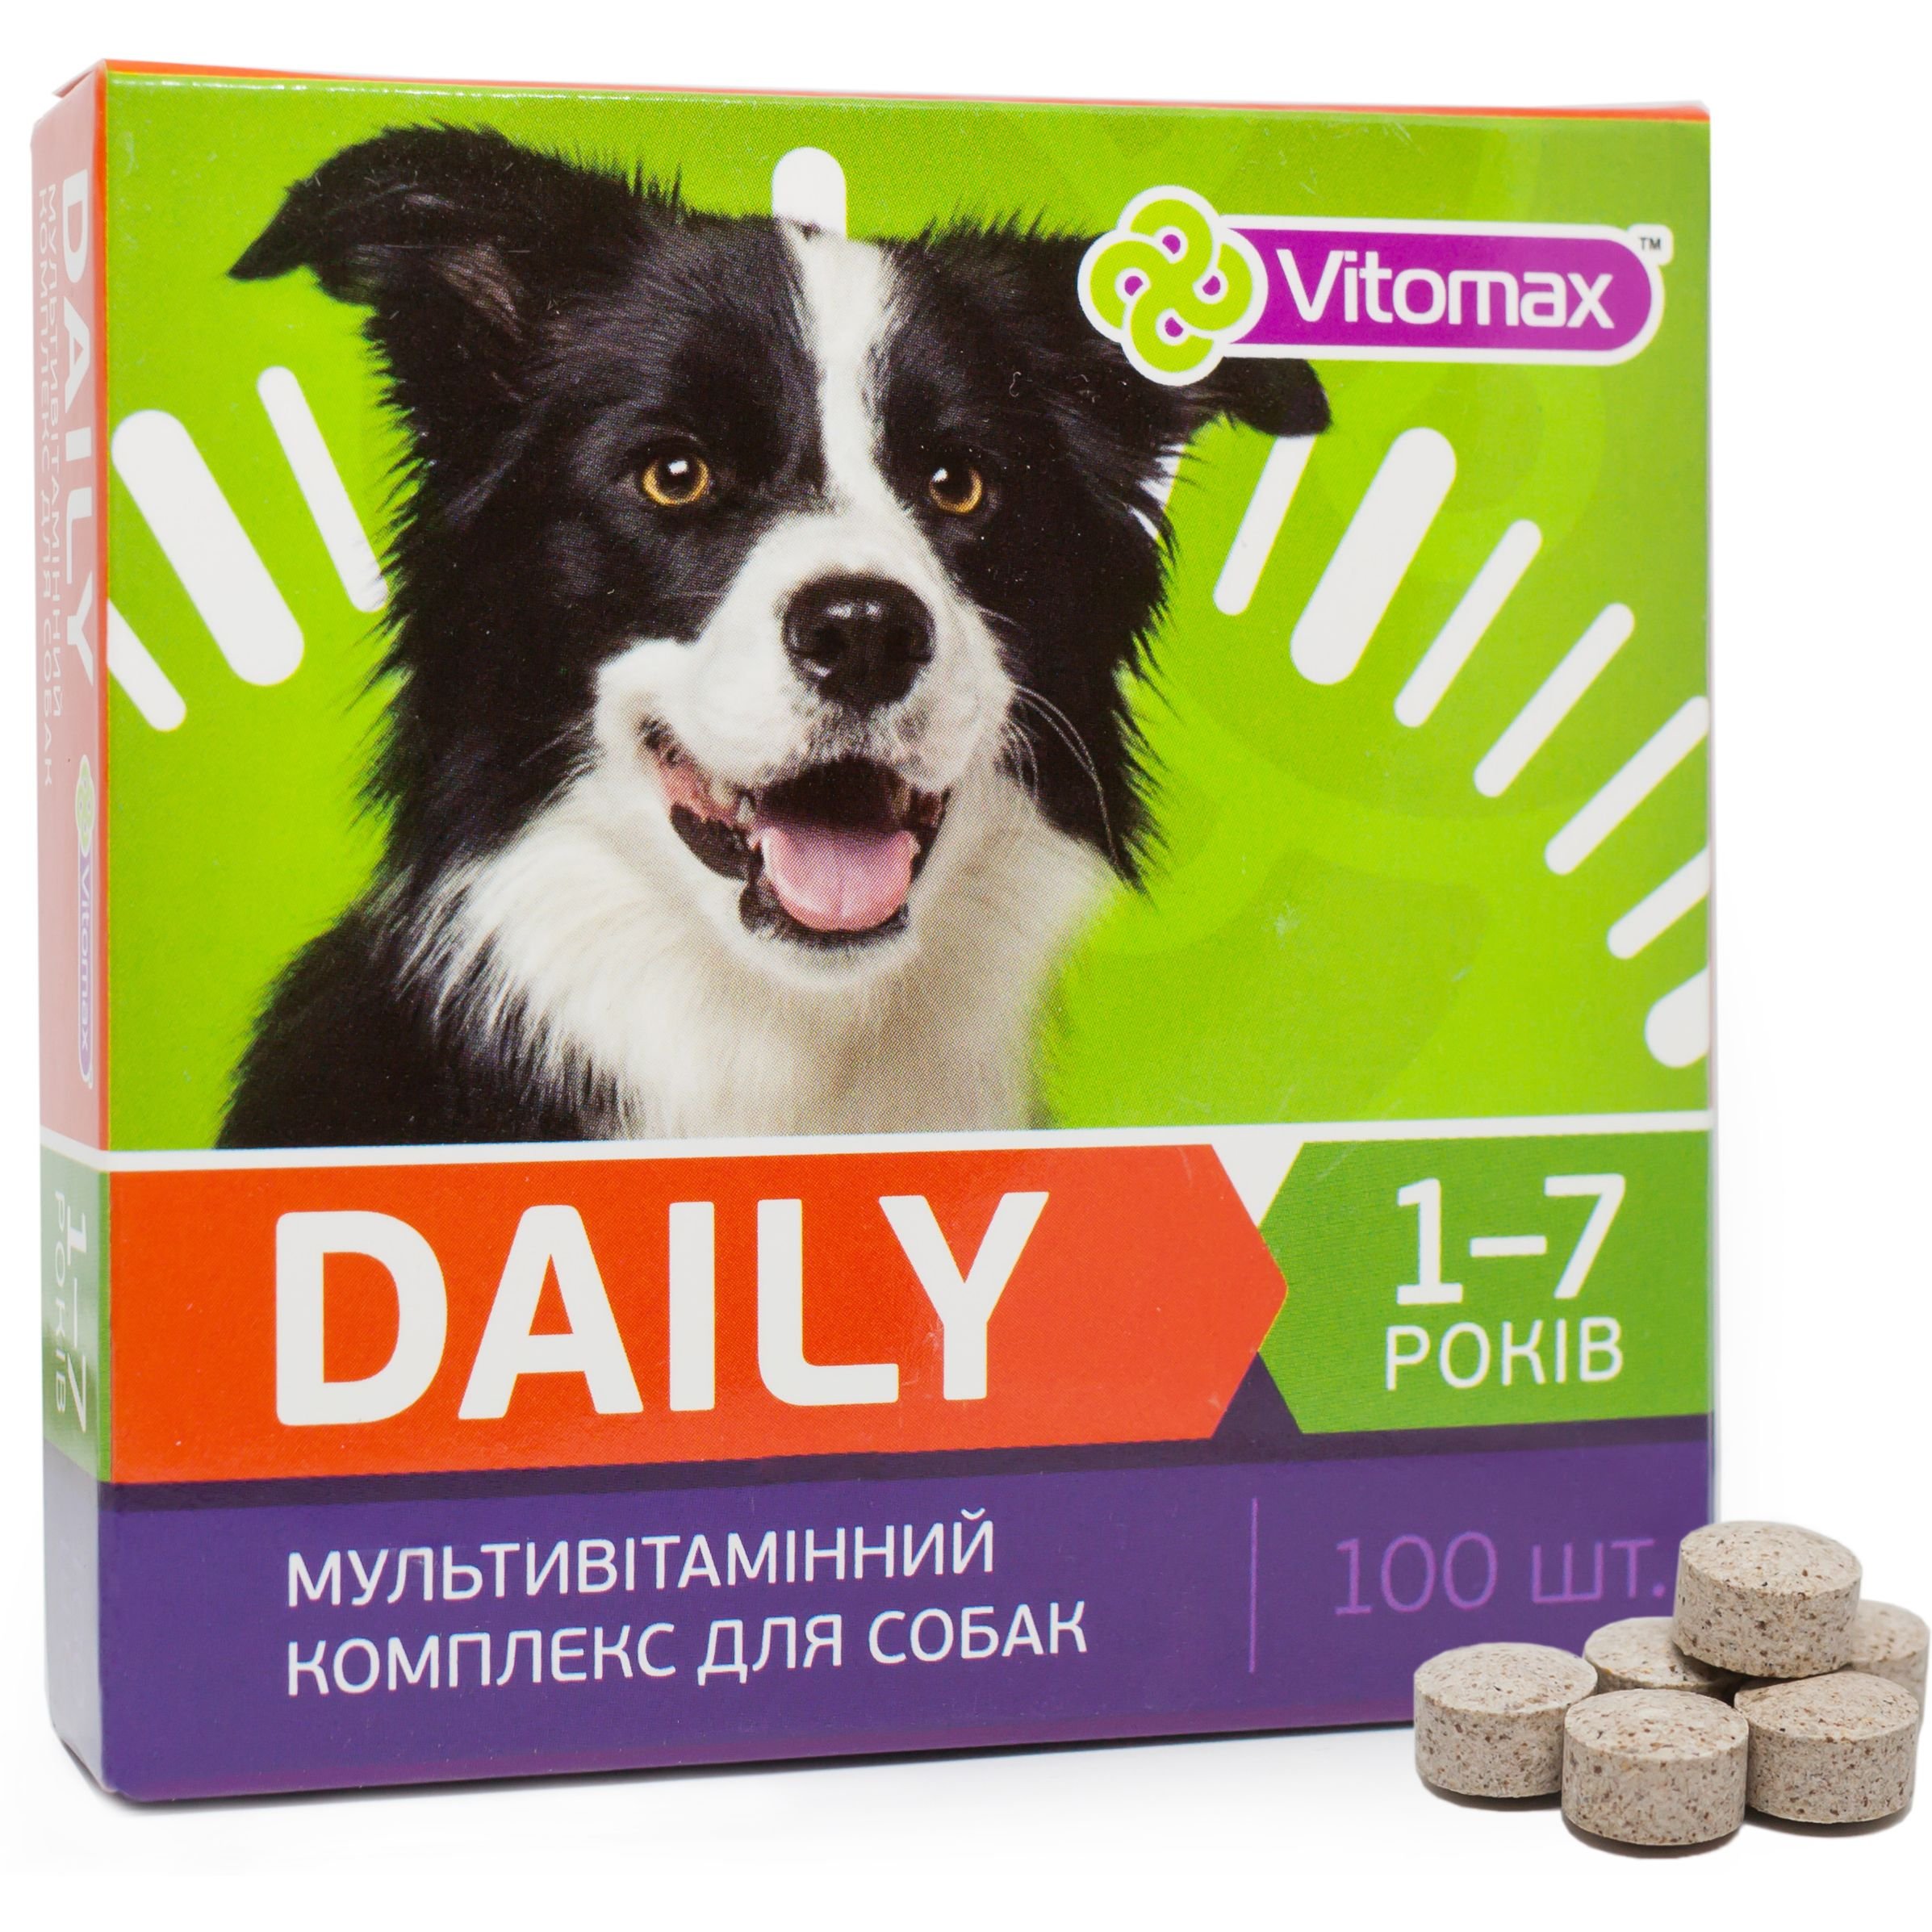 Мультивітамінний комплекс Vitomax Daily для собак 1-7 років, 100 таблеток - фото 2